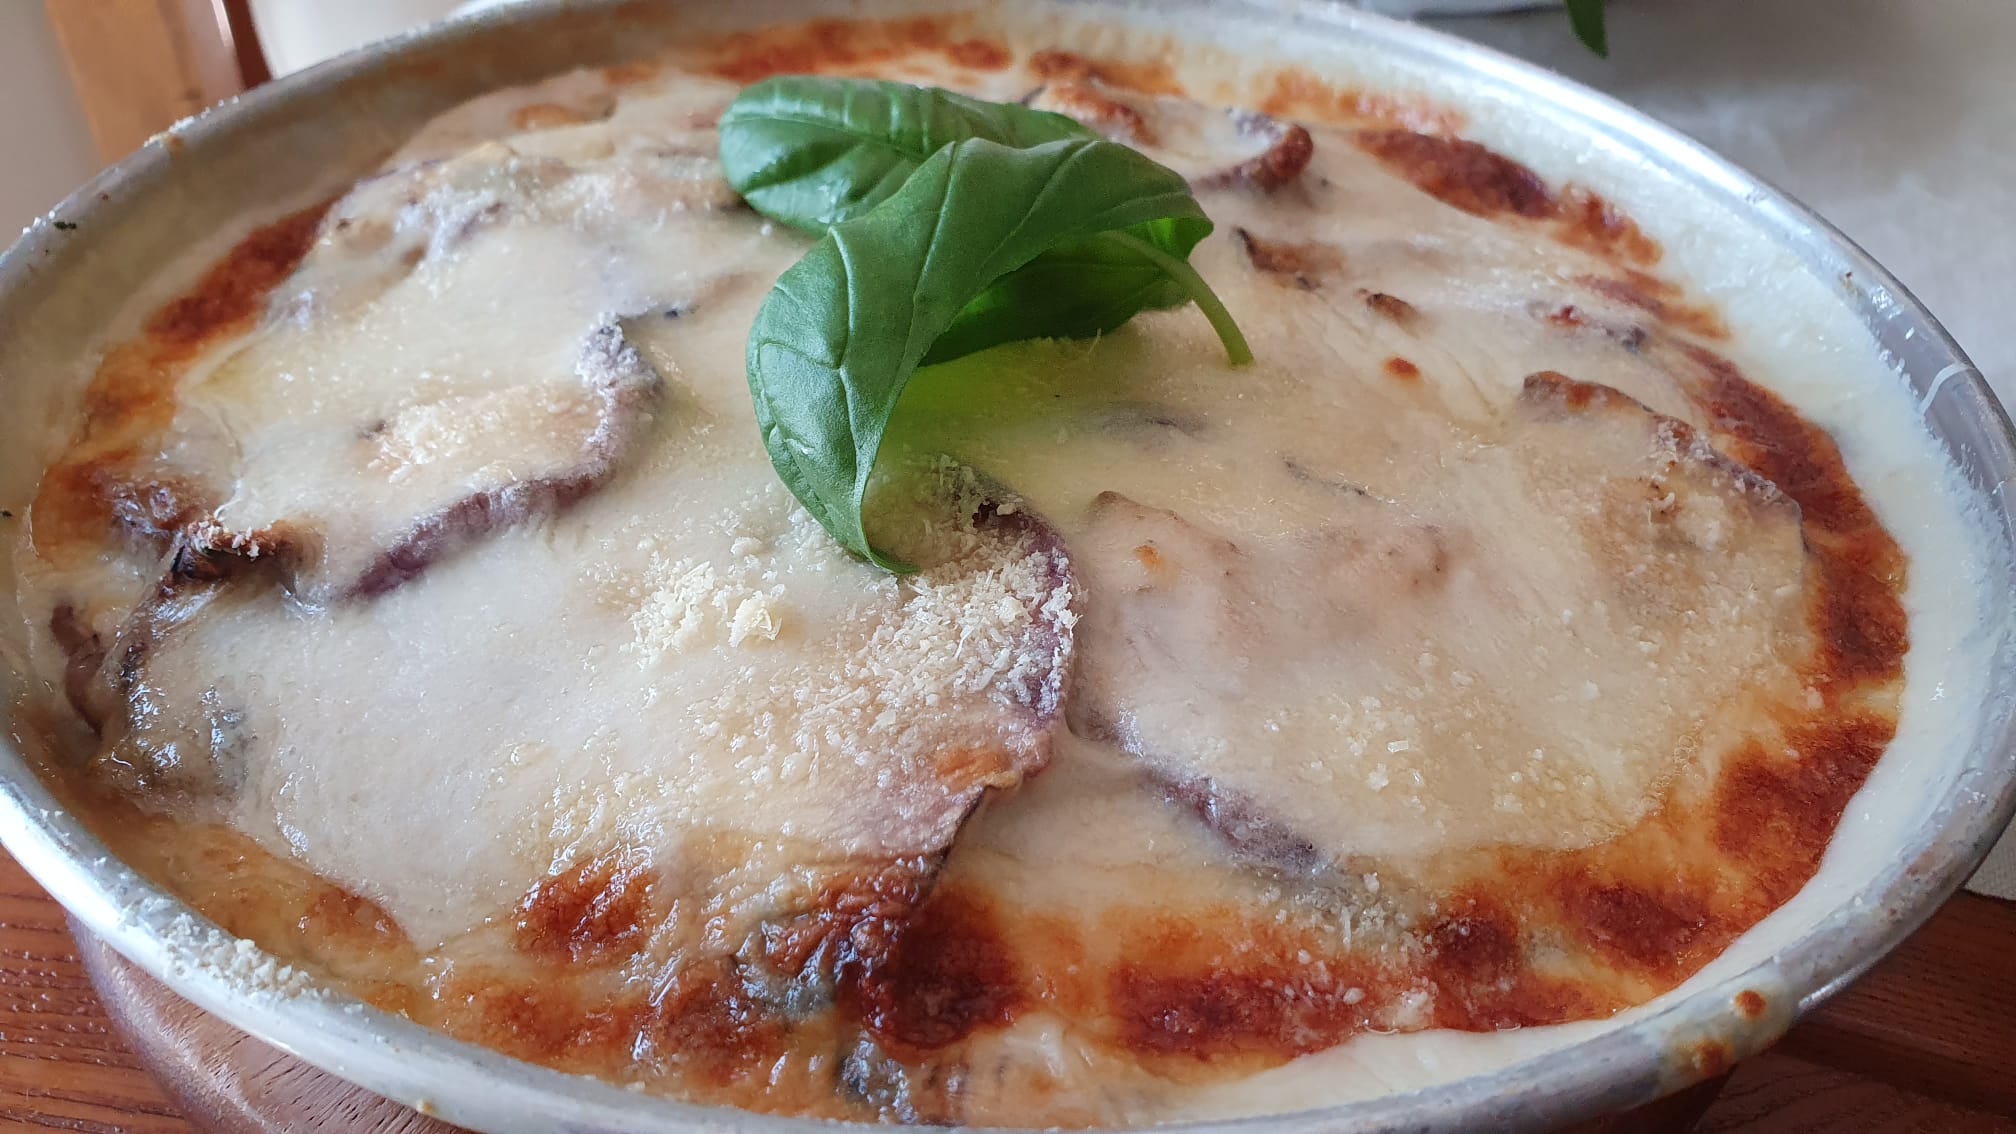 parmigiana-bianca-di-melanzane-veloce,-non-fritte:-come-avere-un-piatto-cremoso-e-profumato